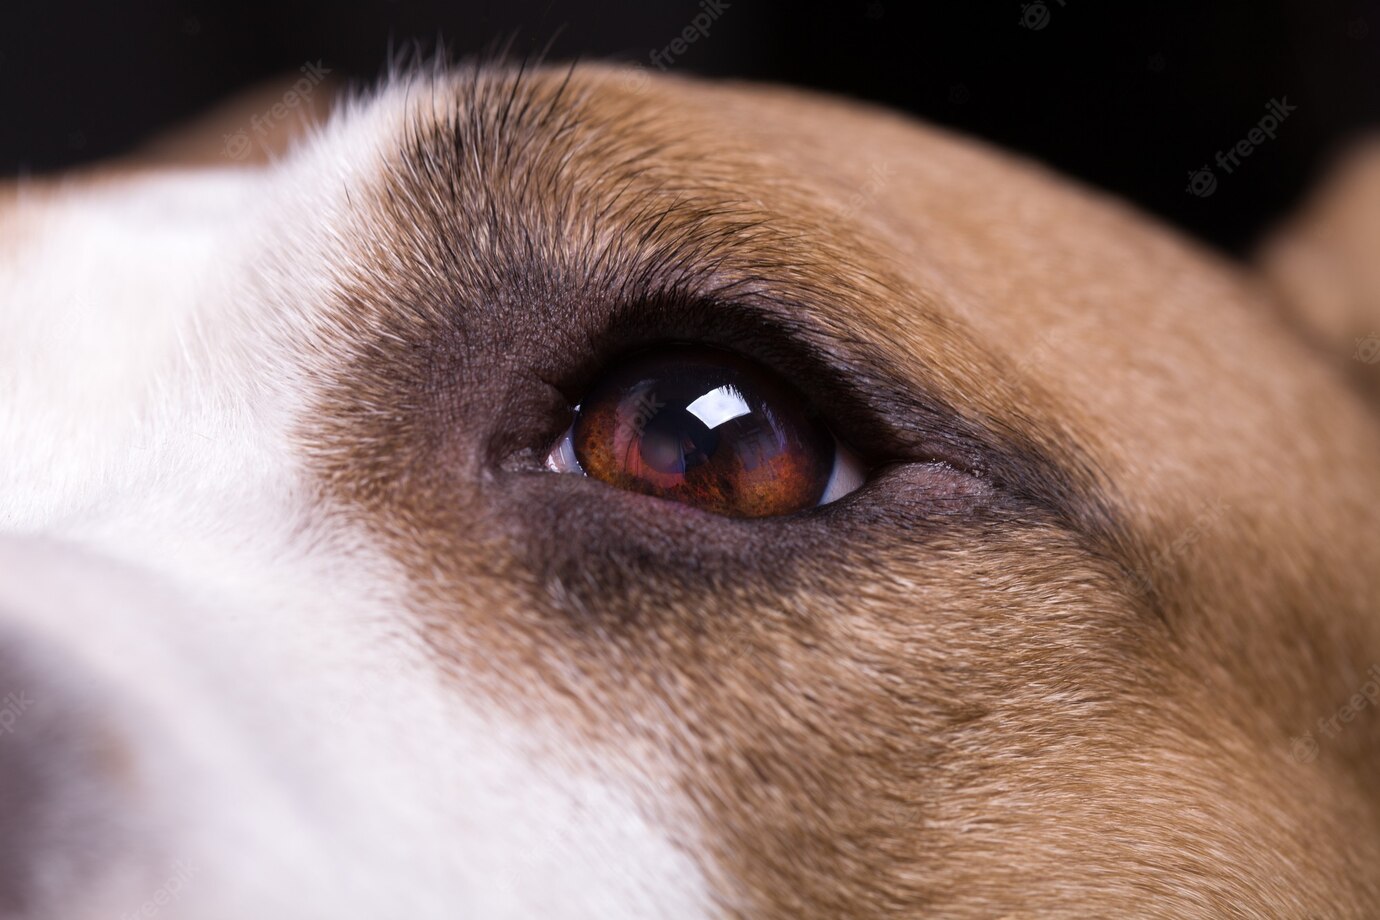 beautiful-dog-eye-close-up_153912-1003